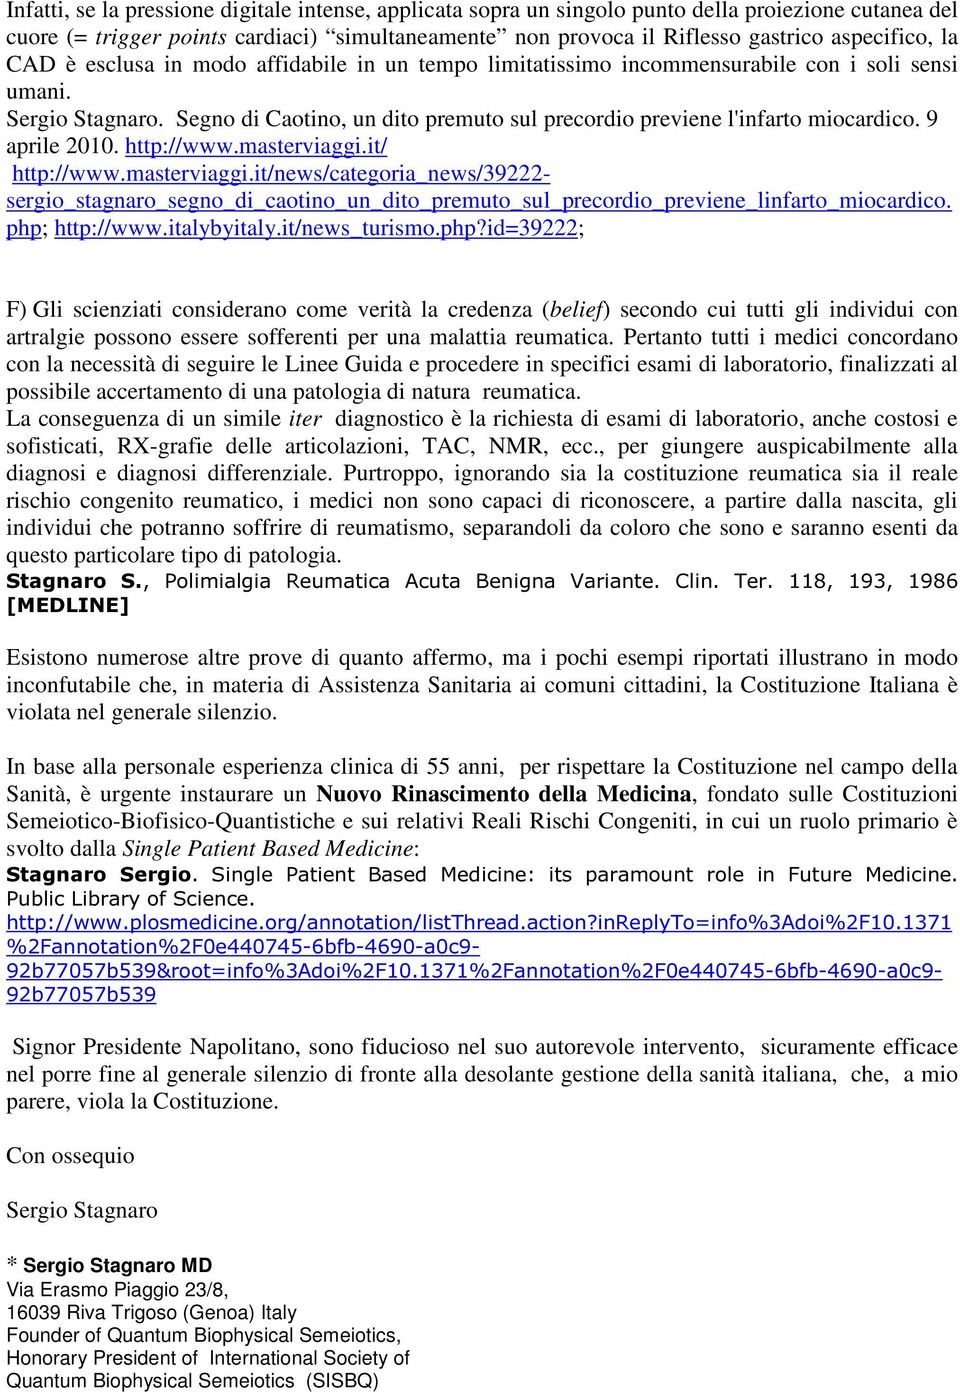 9 aprile 2010. http://www.masterviaggi.it/ http://www.masterviaggi.it/news/categoria_news/39222- sergio_stagnaro_segno_di_caotino_un_dito_premuto_sul_precordio_previene_linfarto_miocardico.